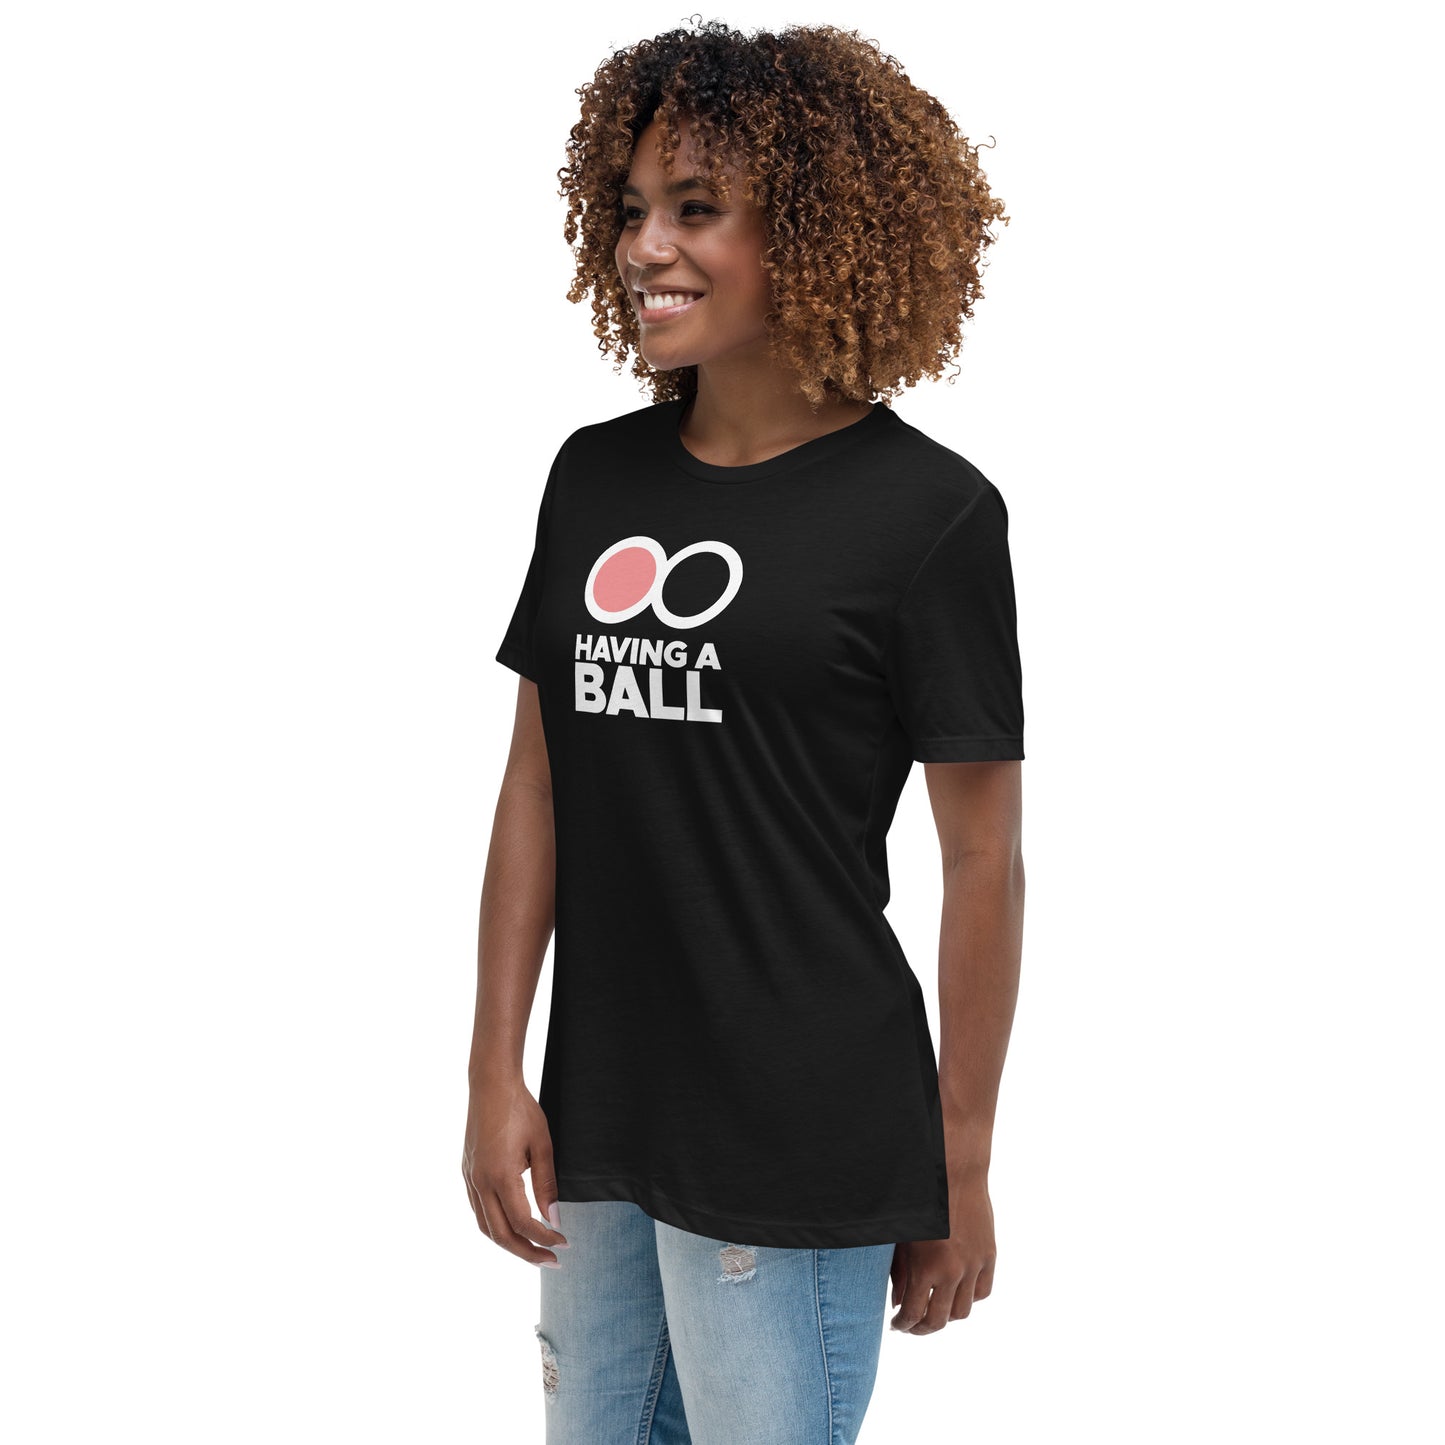 Having A Ball - Women's Relaxed T-Shirt